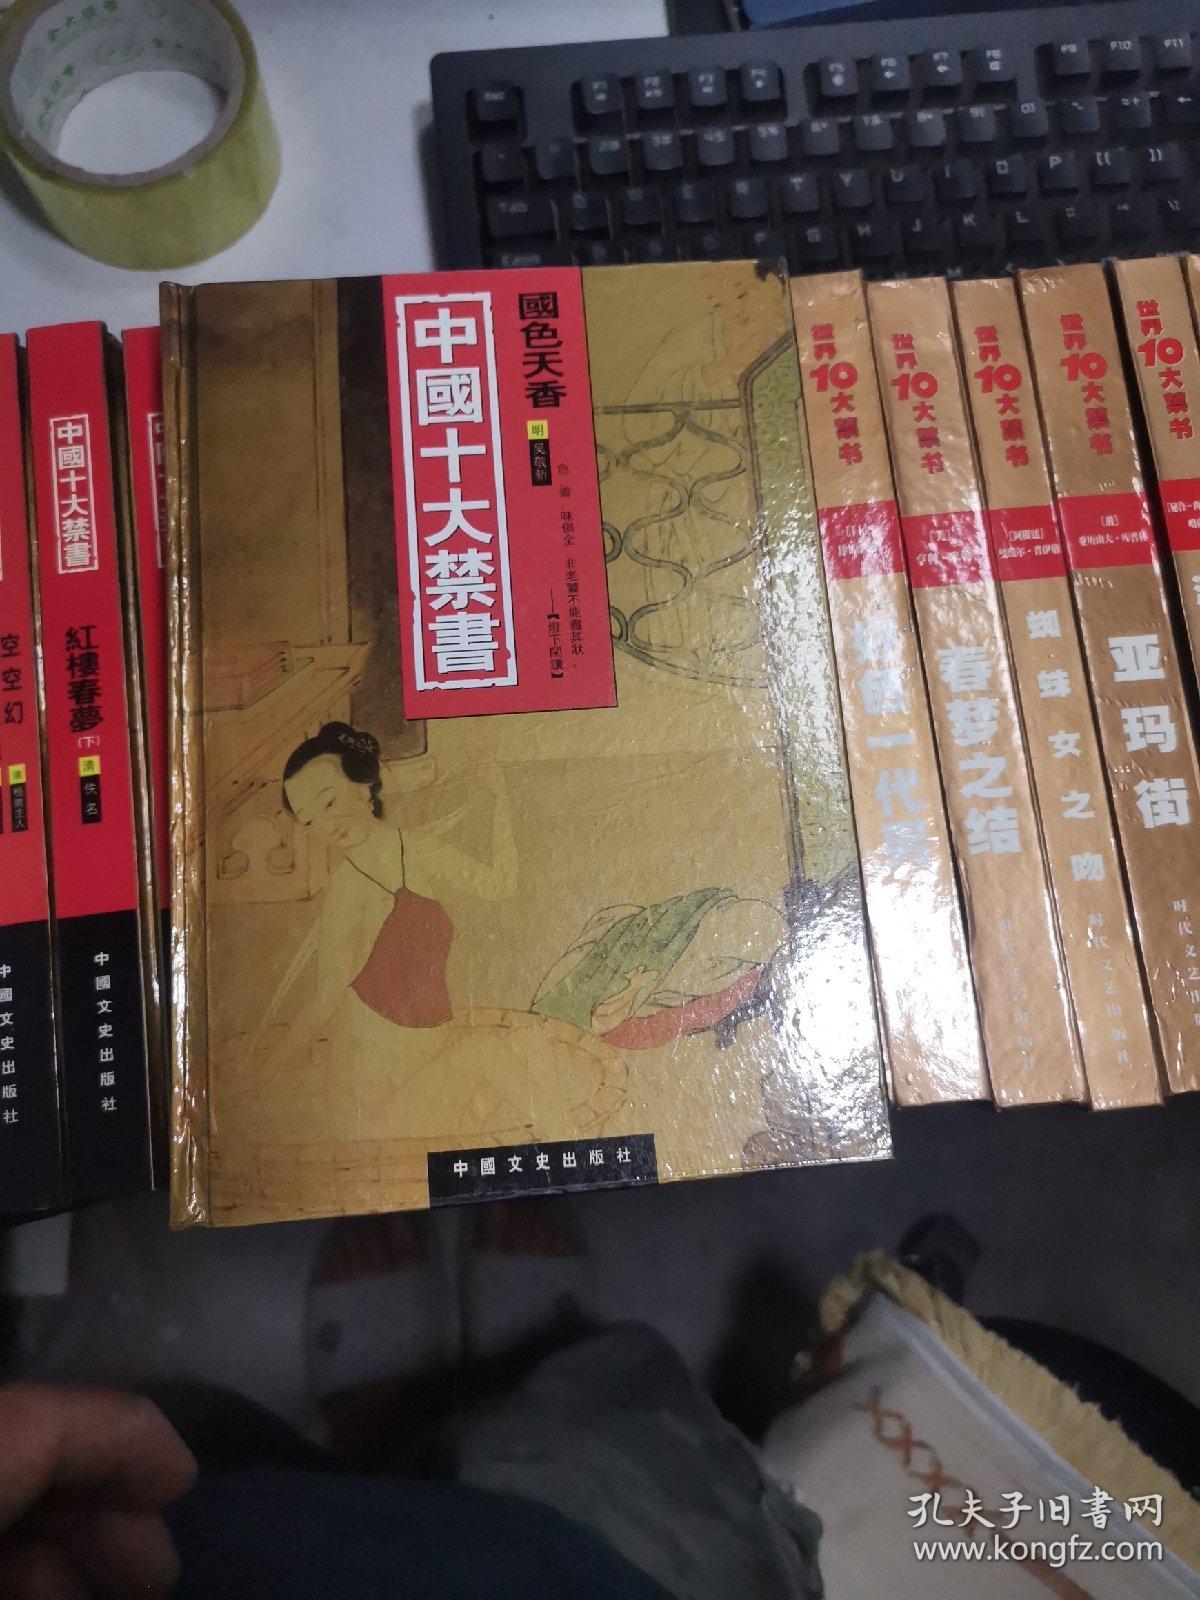 中国十大禁书 全12册+世界十大禁书 全12册（共24册全） 正版